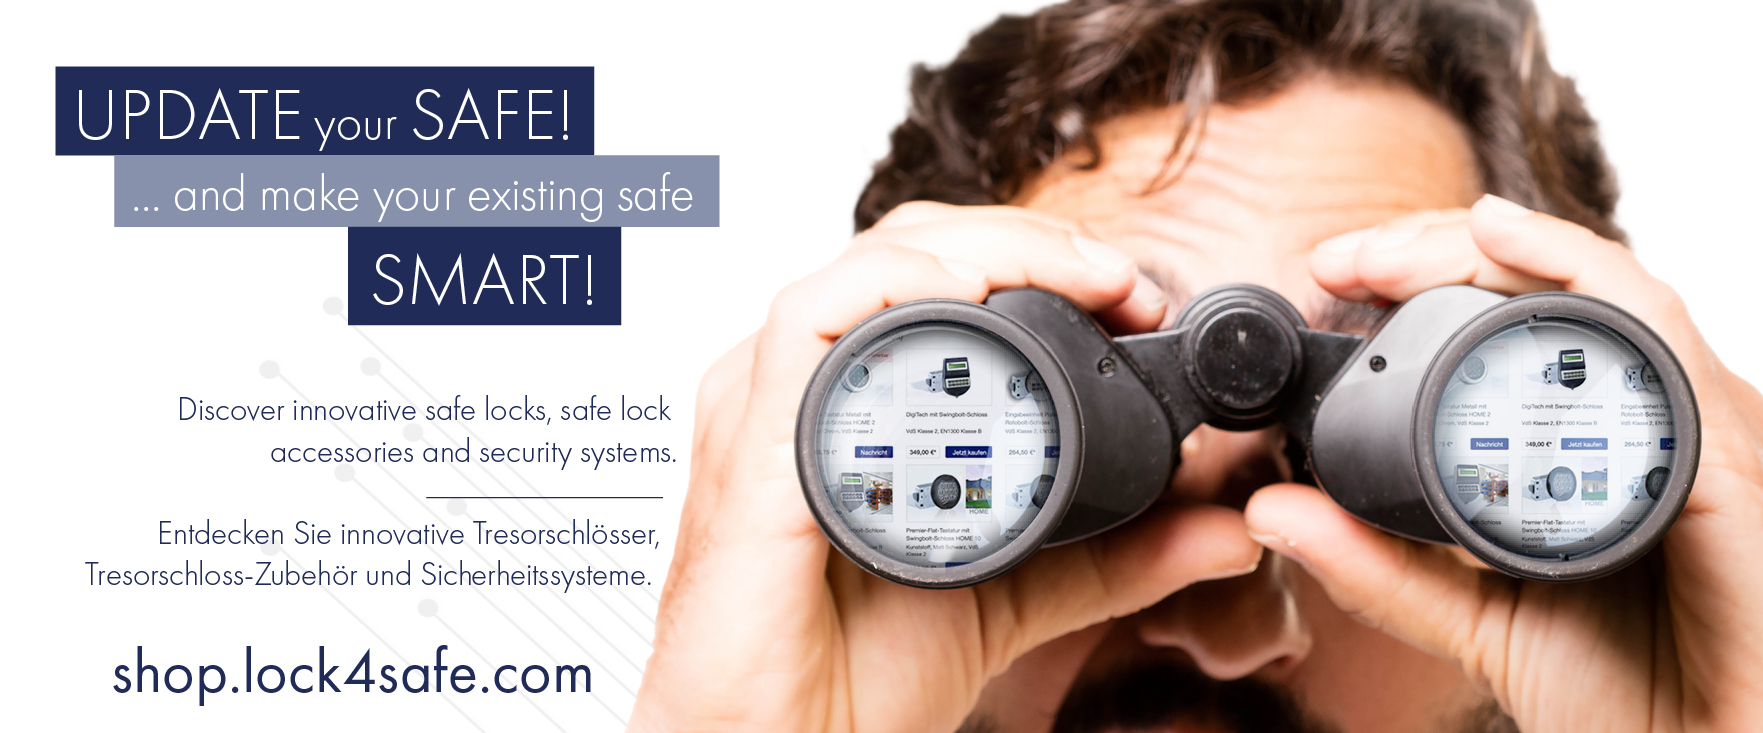 Online shop Lock4Safe, buy safe locks online, smart safe locks online store, safety security online shop